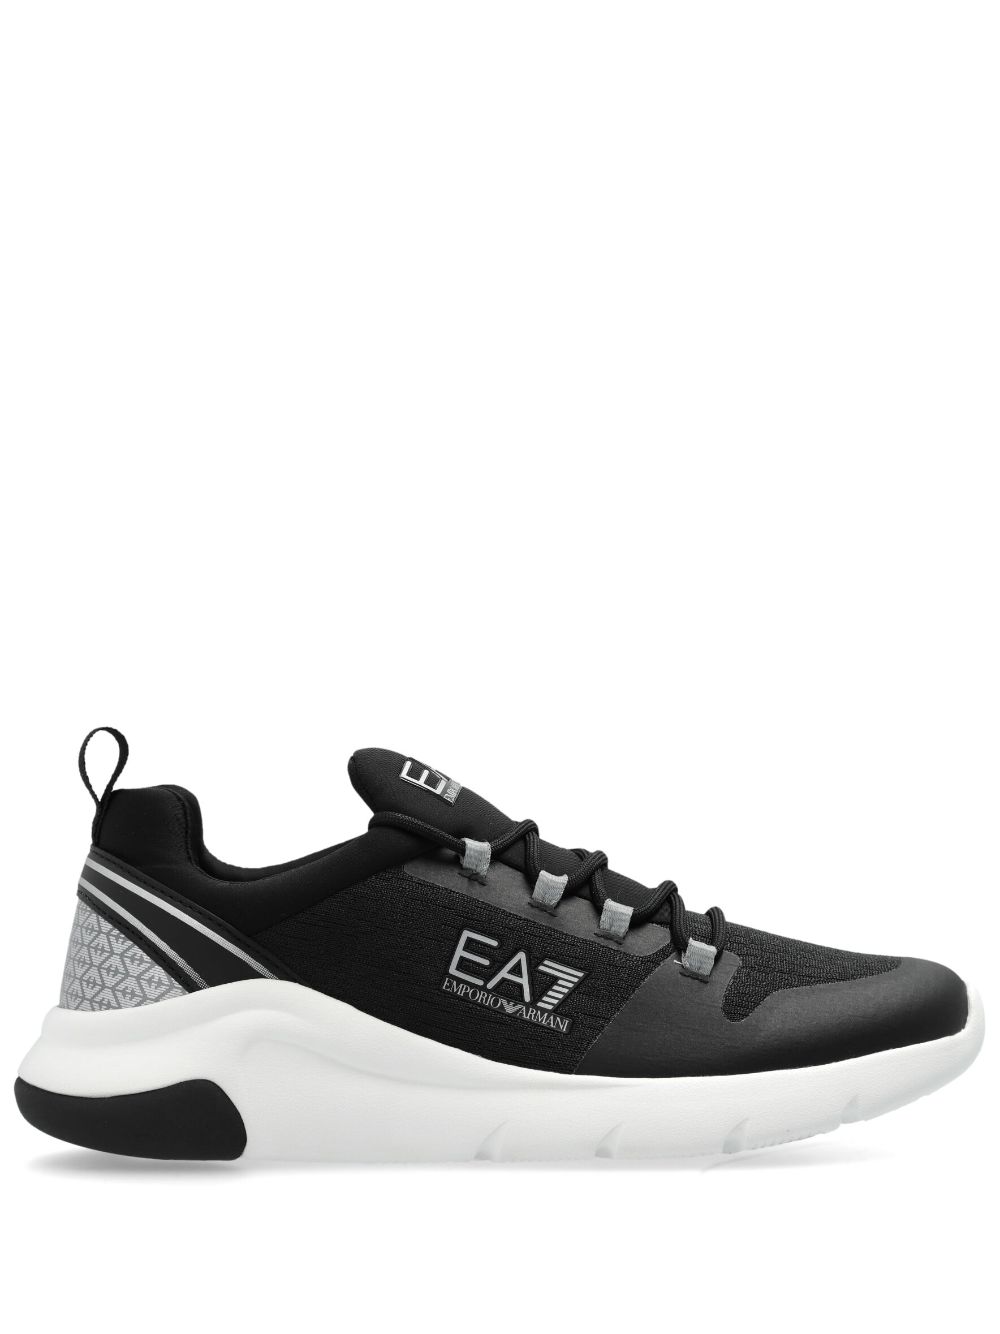 Ea7 Emporio Armani Racer Evo low-top sneakers - Black von Ea7 Emporio Armani